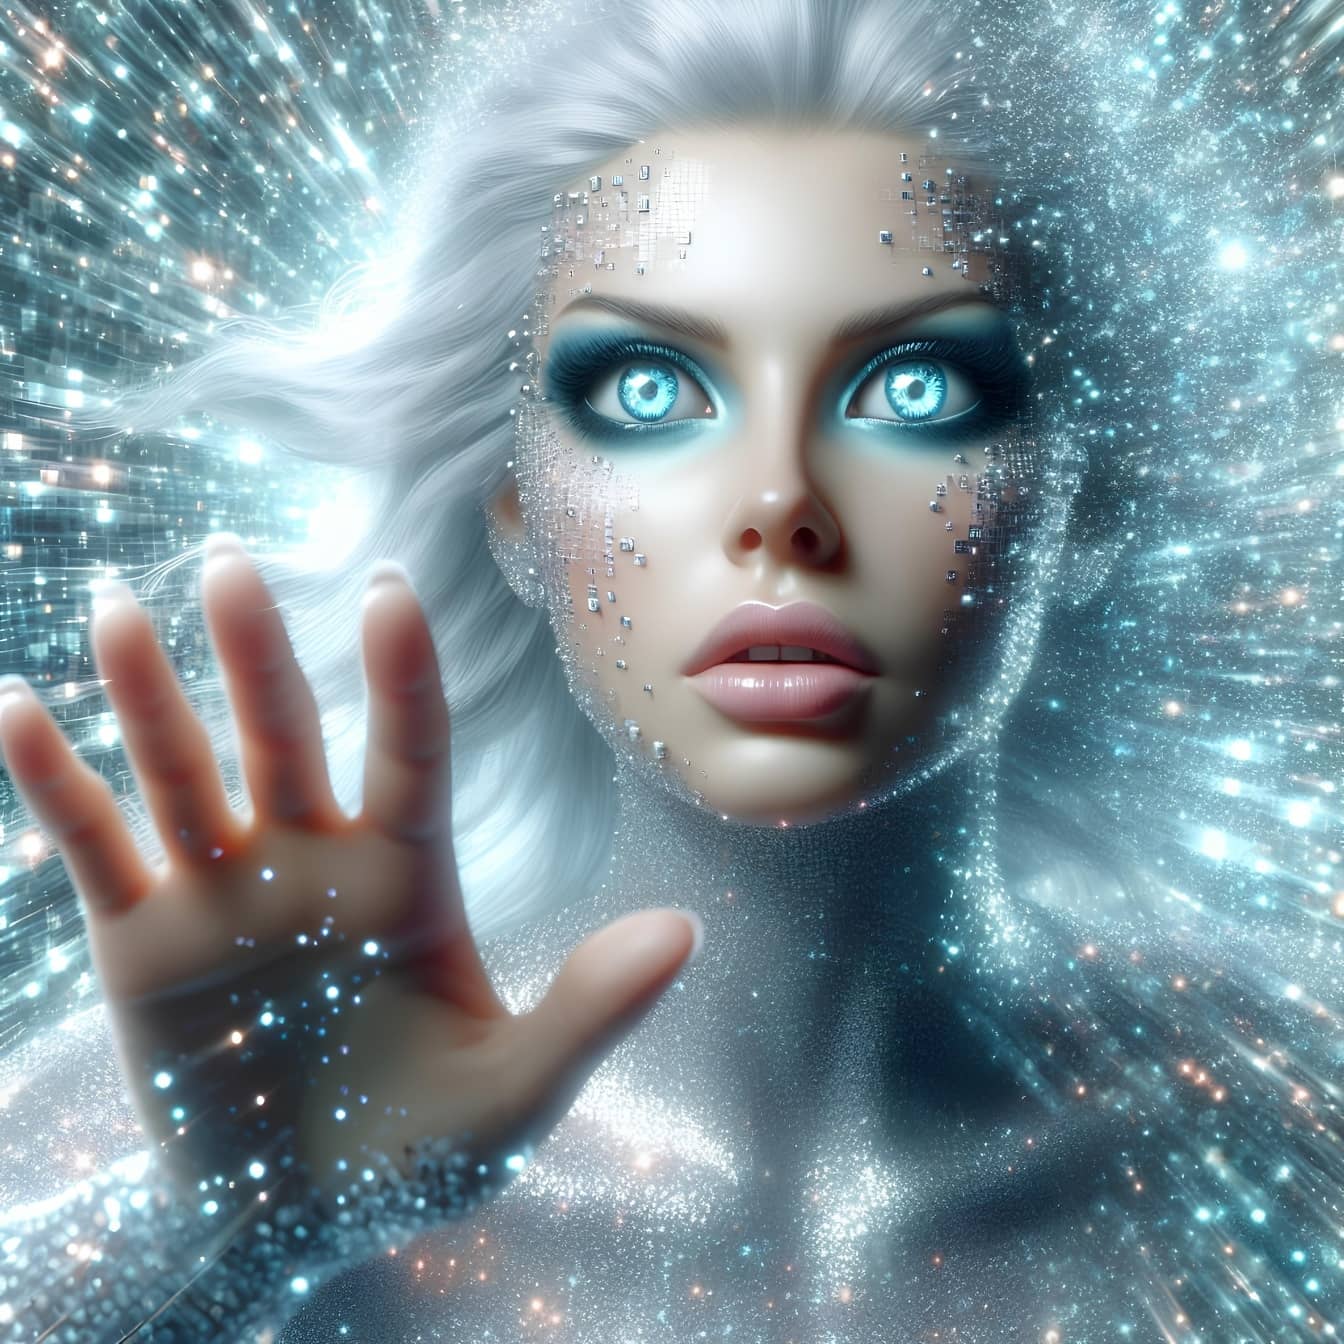 Femeia-cyborg umanoidă folosește tehnica hipnozei cuantice pentru a transfera energie astrală